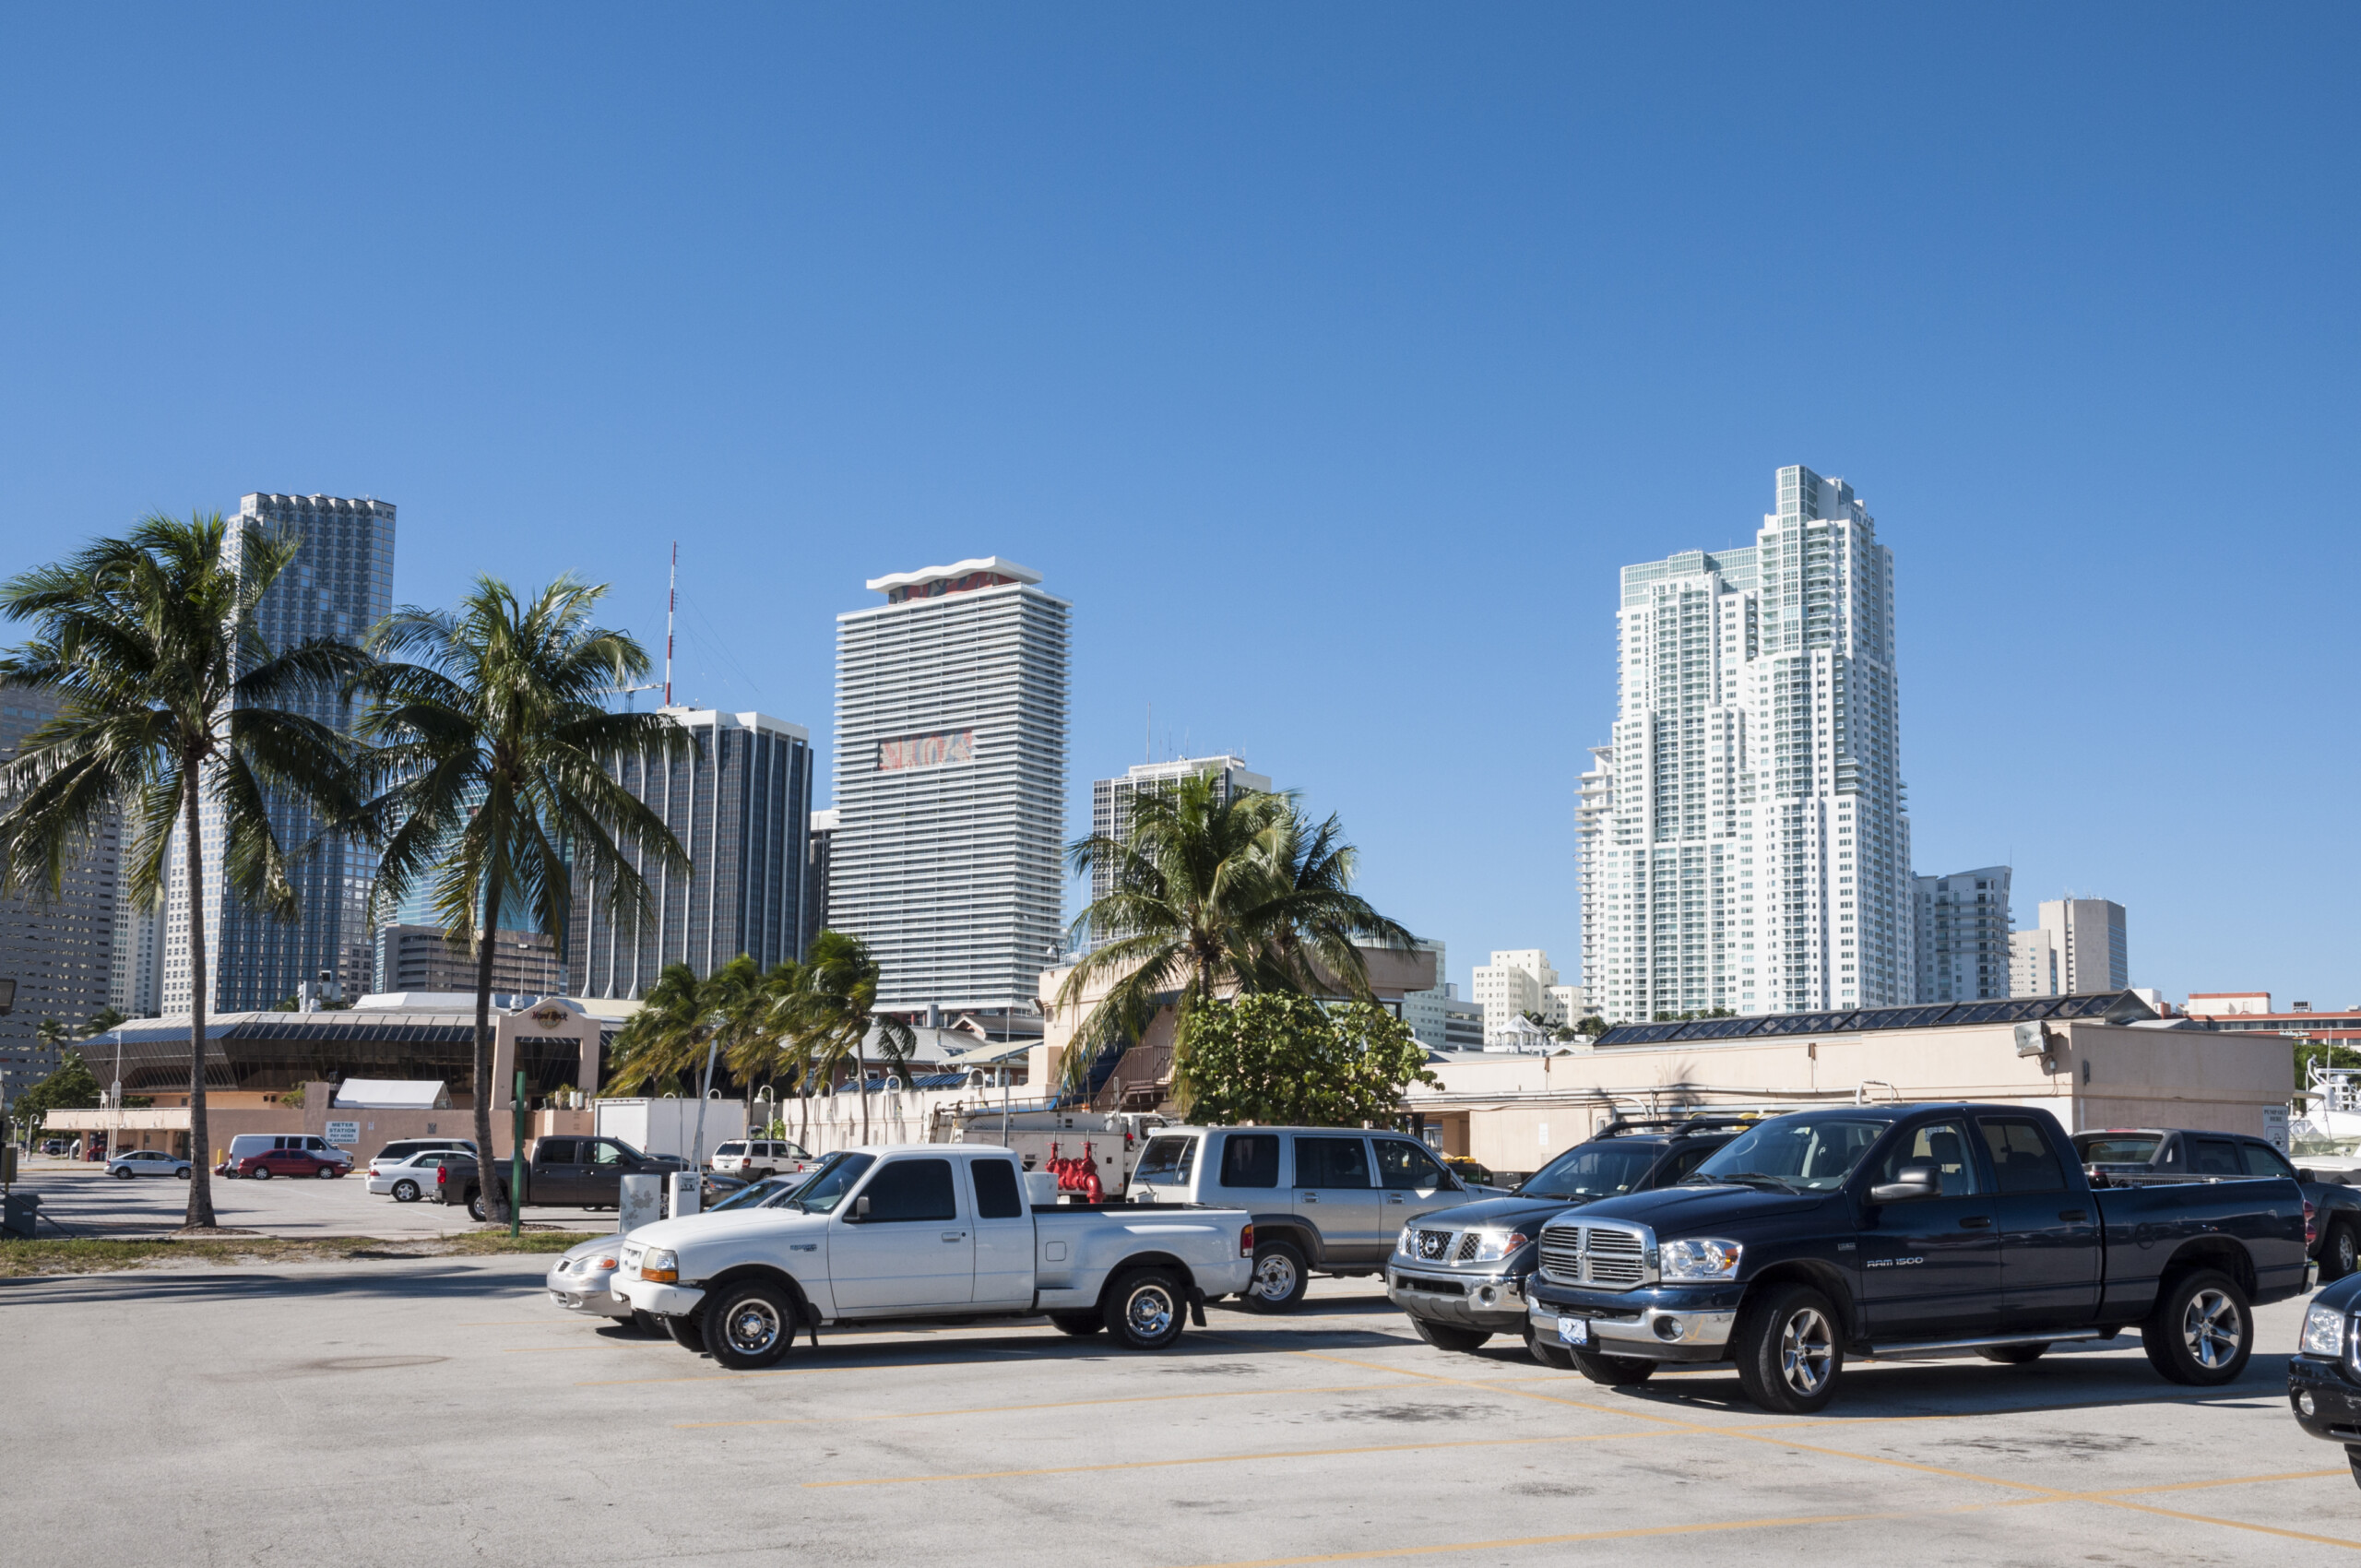 Pojazdy na parkingu w centrum miasta w Miami. 13 listopada 2009 w Miami, Floryda, USA, licencja: shutterstock/Autor: Philip Lange